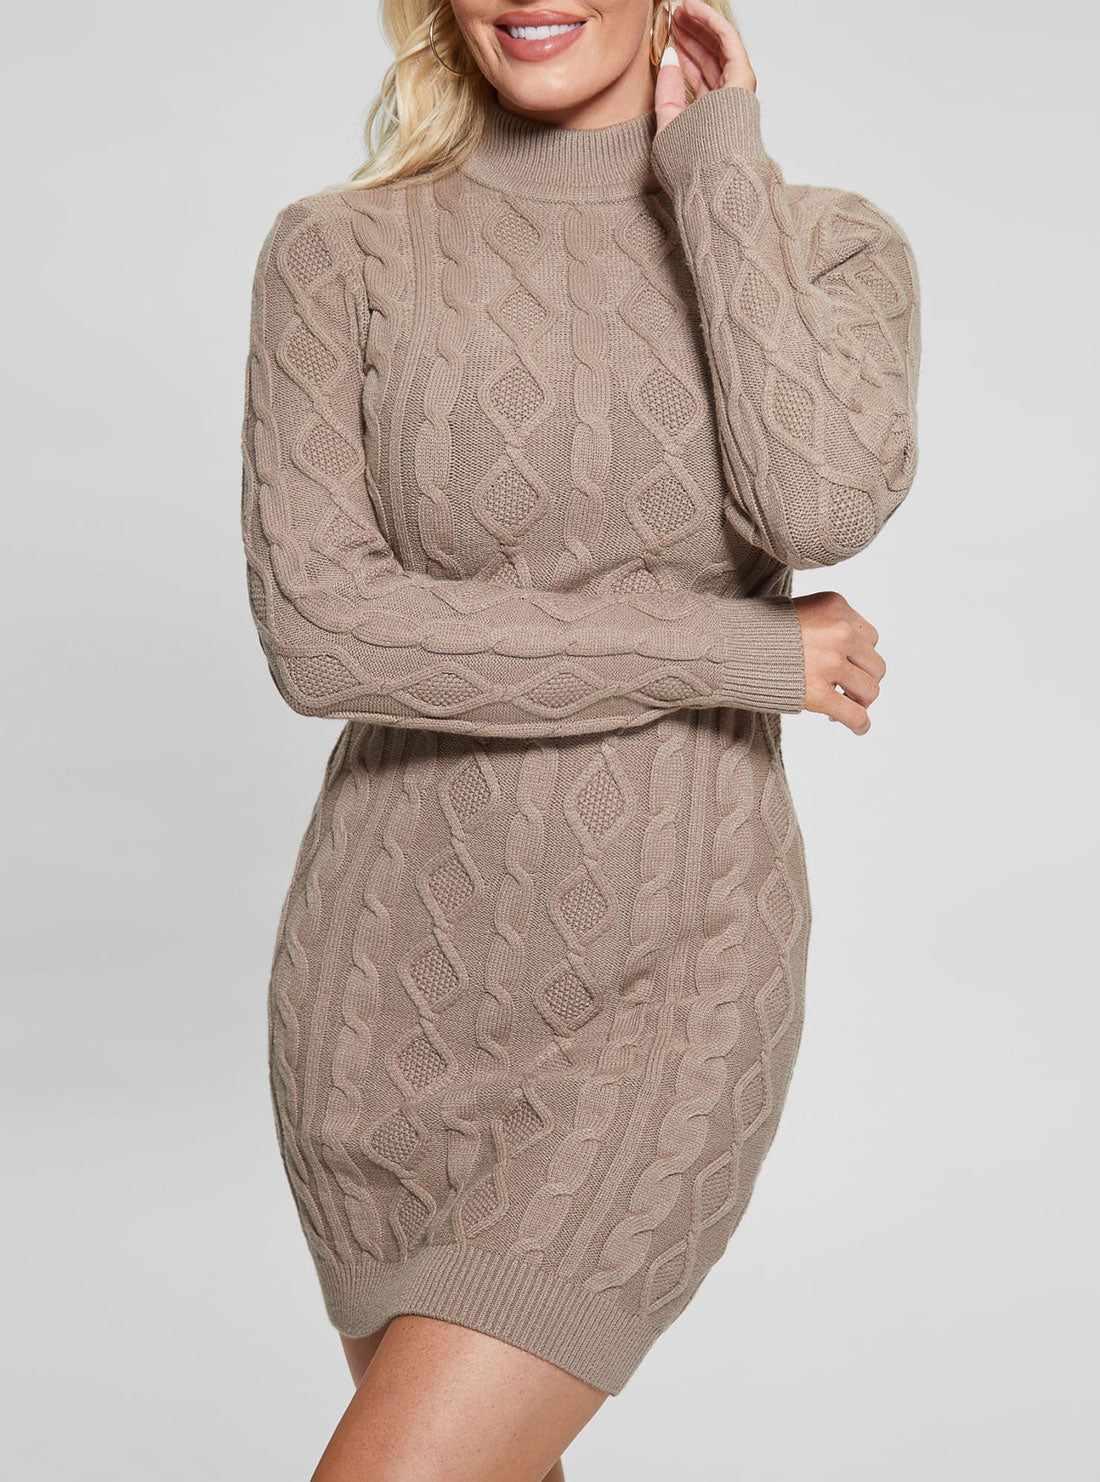 Taupe Brown Sera Mini Knit Dress | GUESS Women's Apparel | detail view